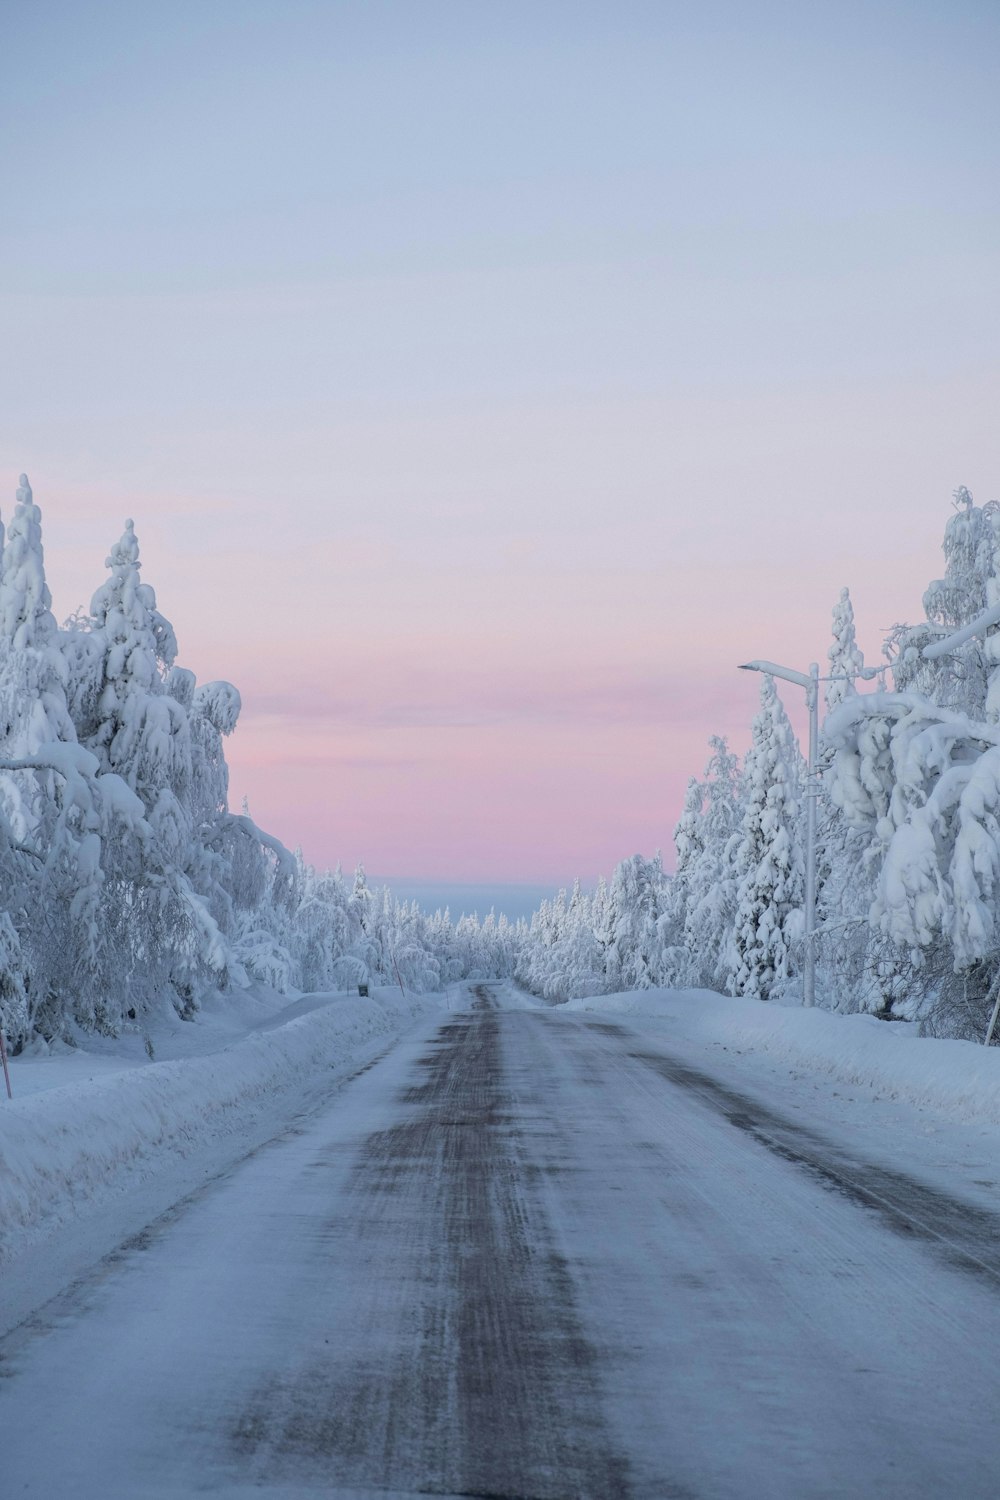 arbres couverts de neige et route pendant la journée